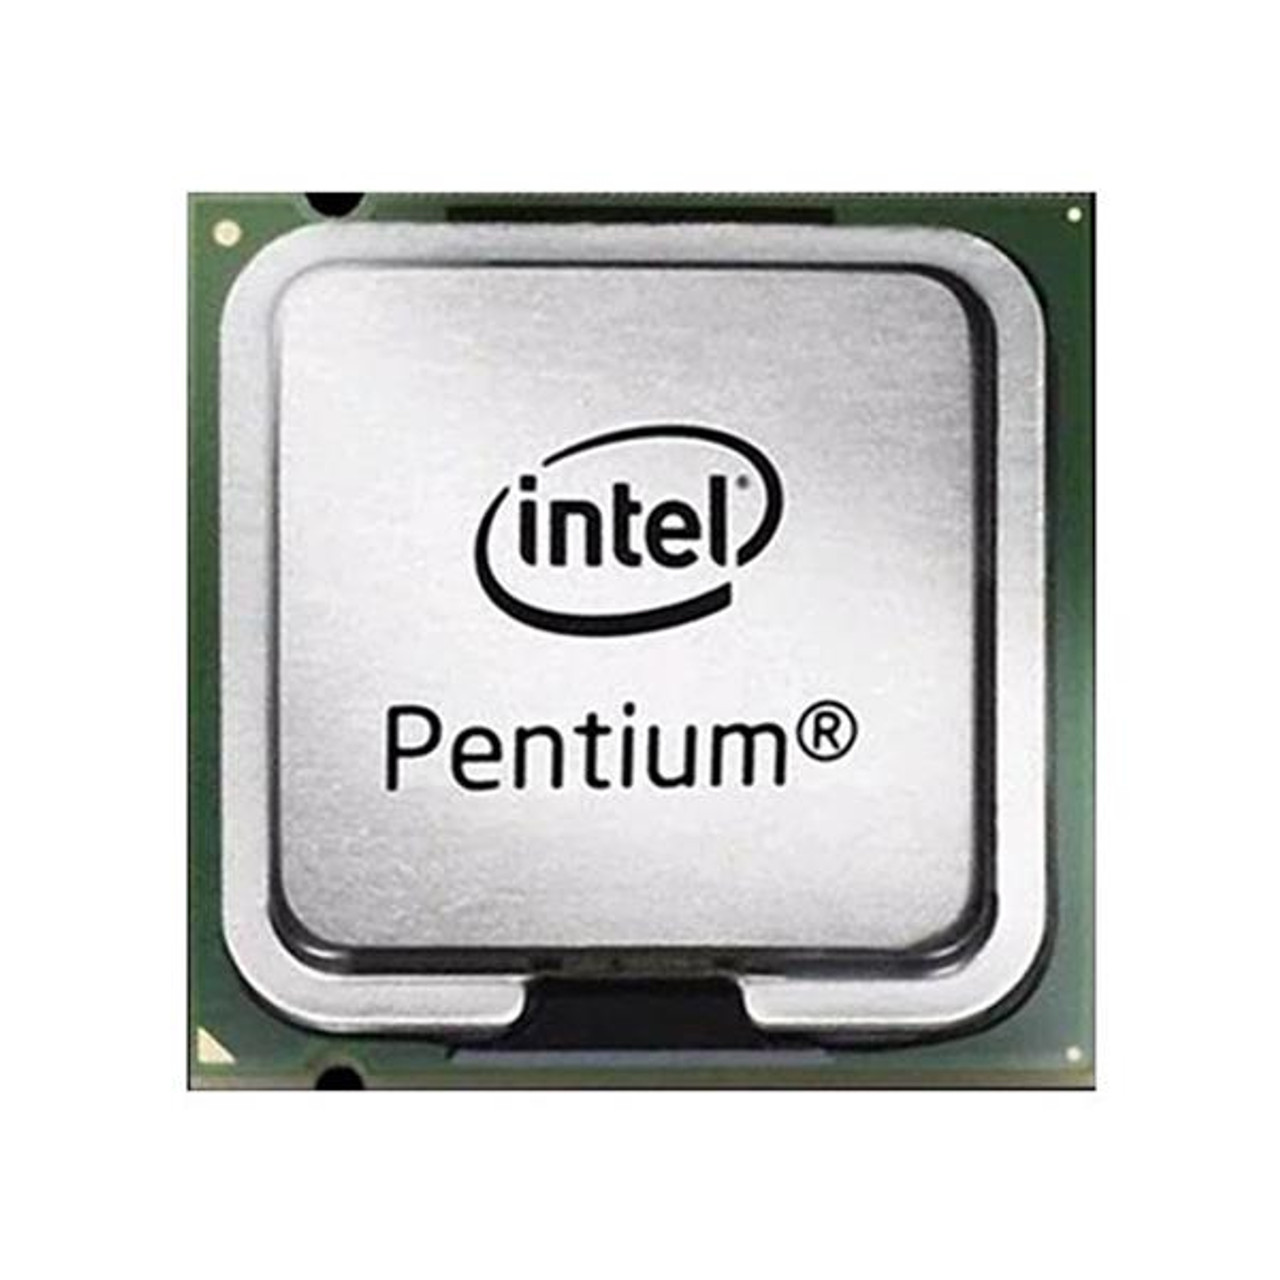 Pentium- n6000